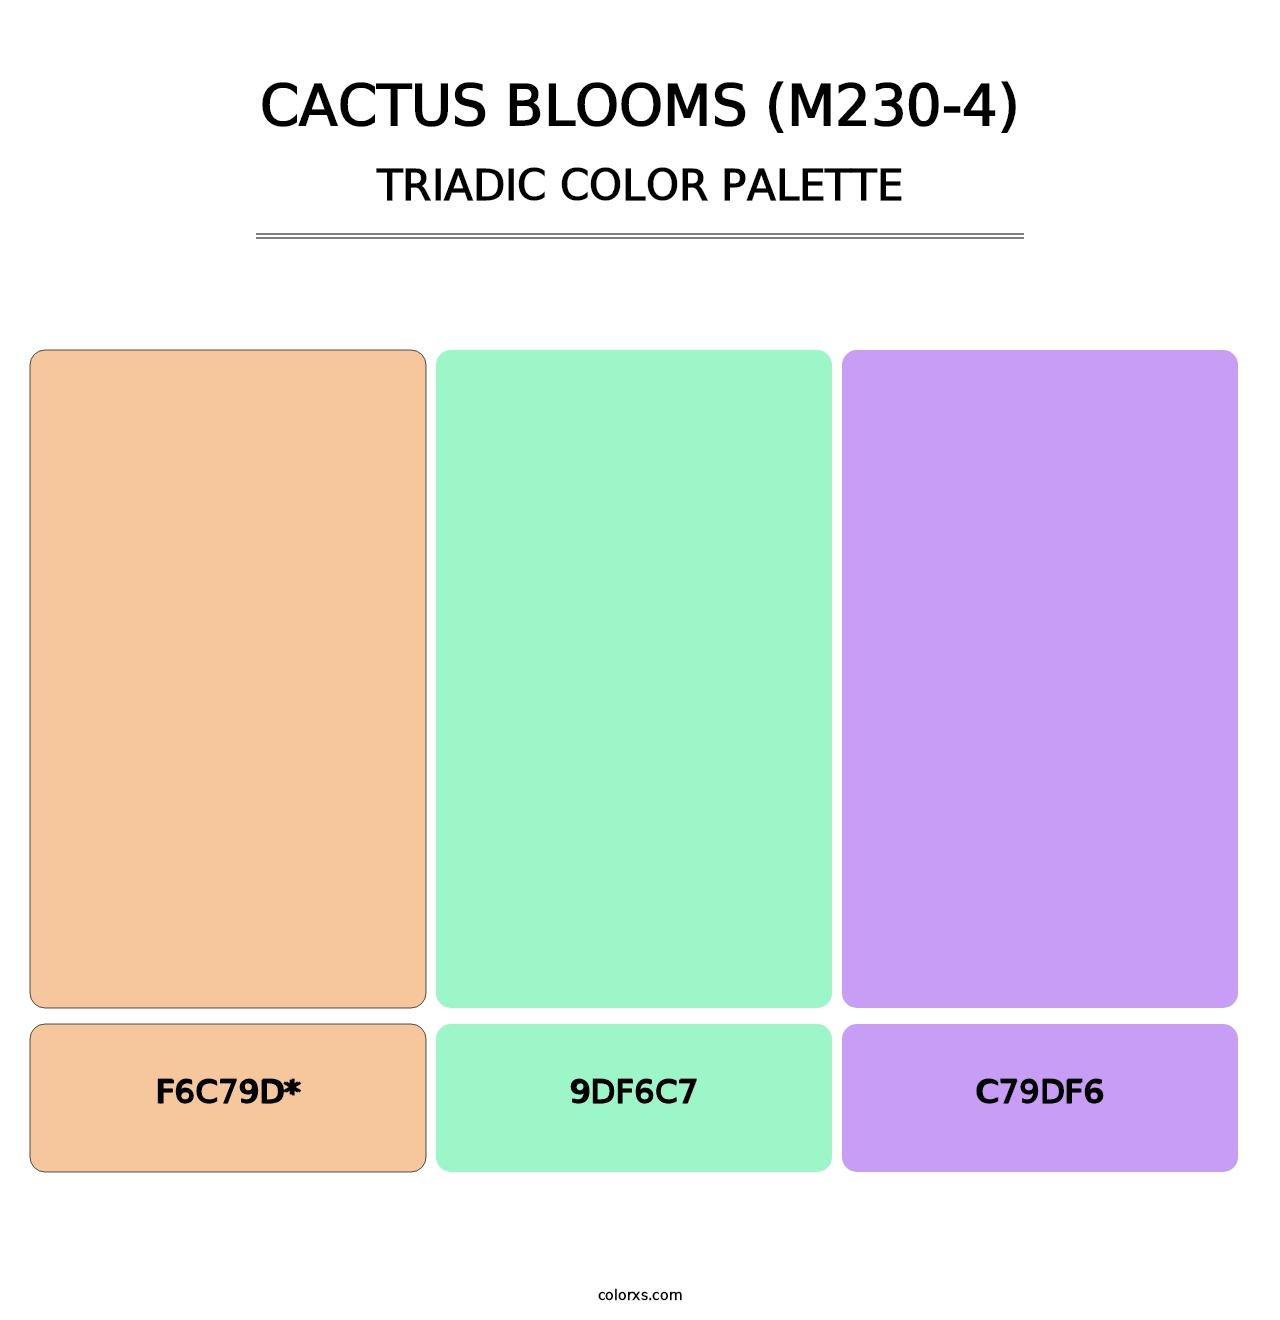 Cactus Blooms (M230-4) - Triadic Color Palette